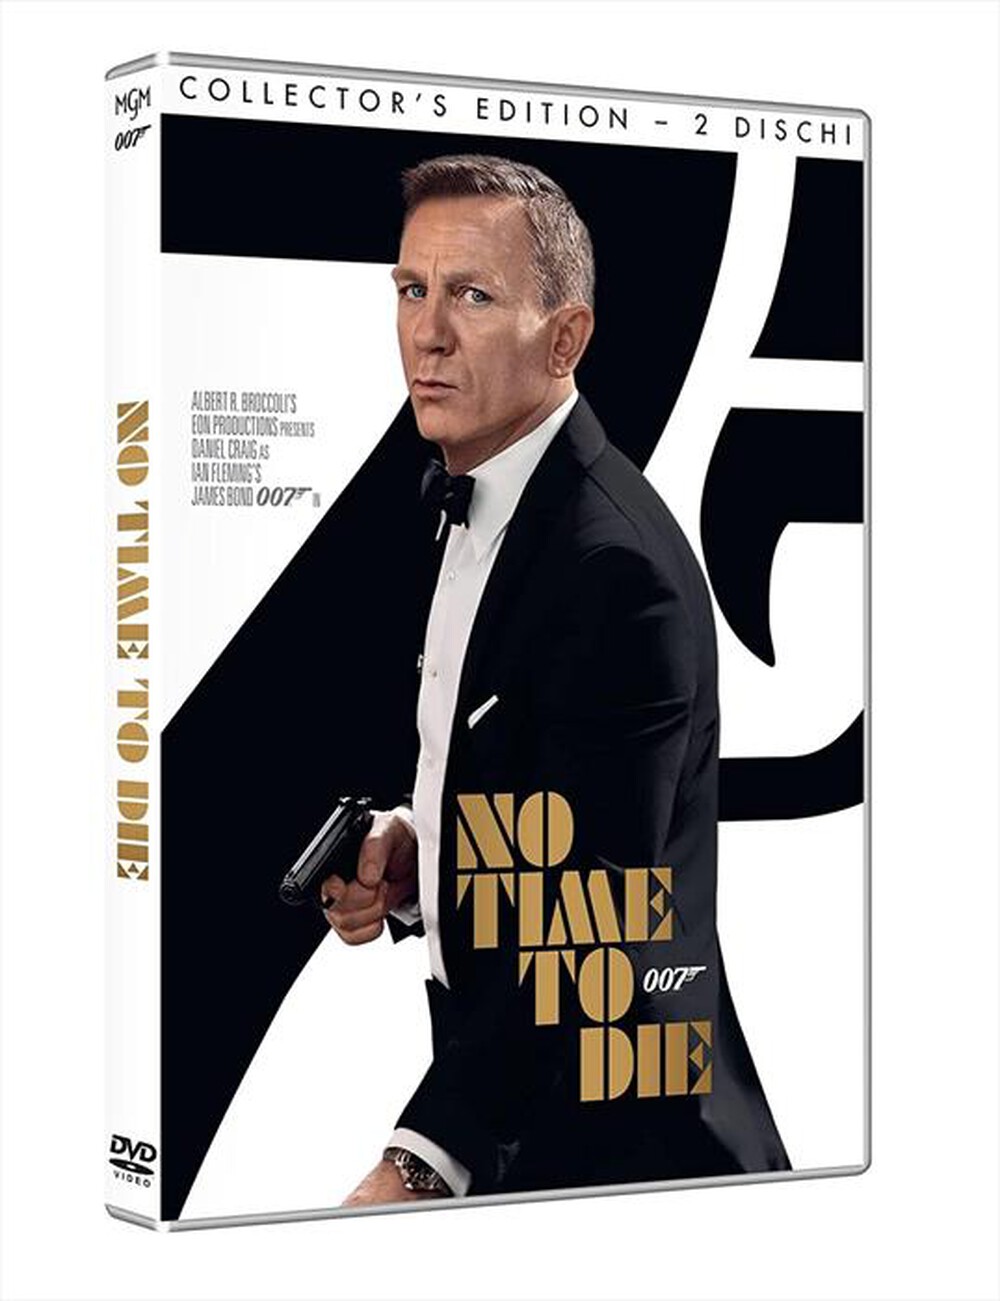 "WARNER HOME VIDEO - 007 No Time To Die"